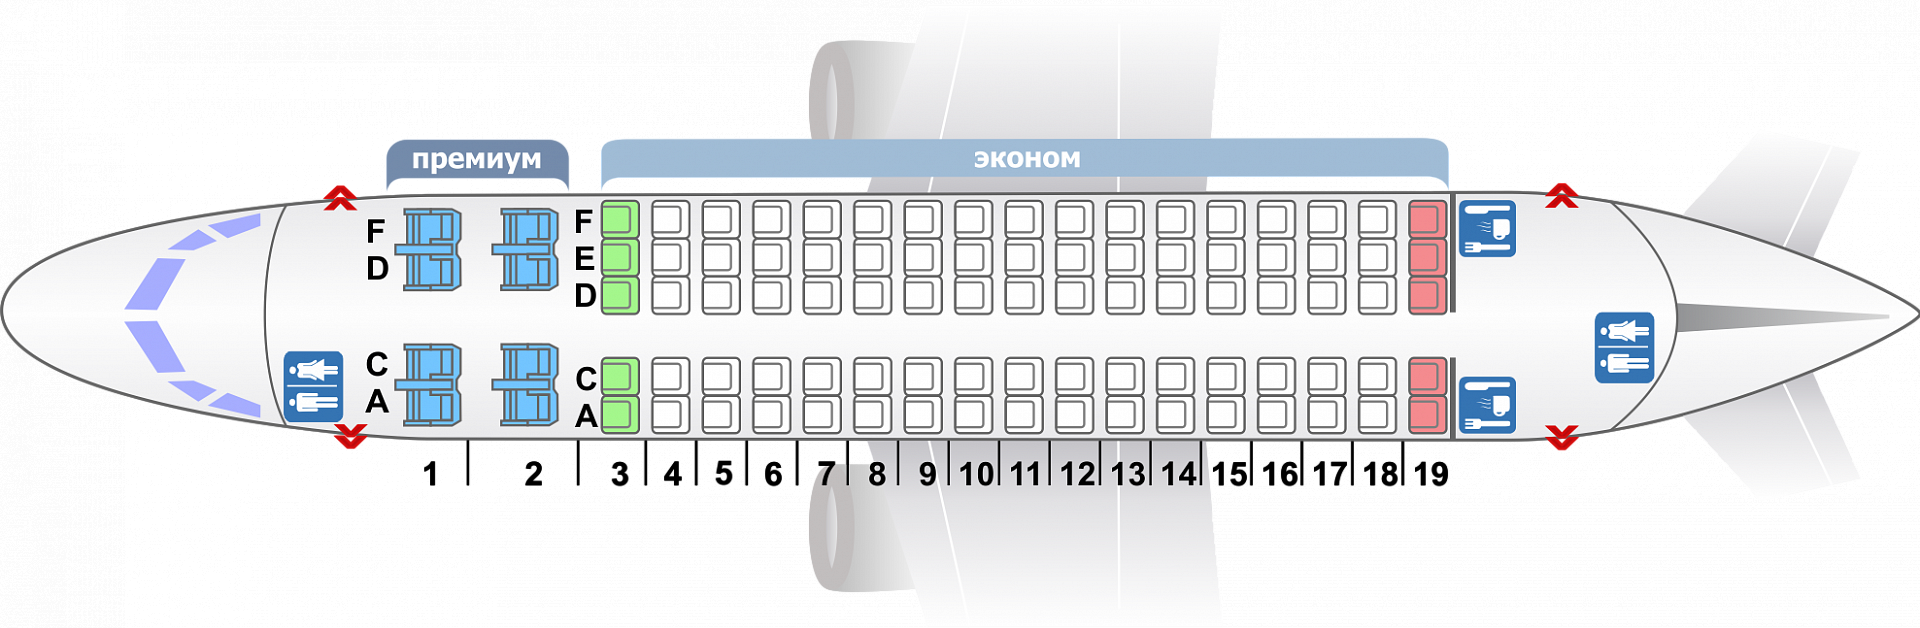 Все о салоне boeing 737 800 flydubai: схема расположения мест в самолете